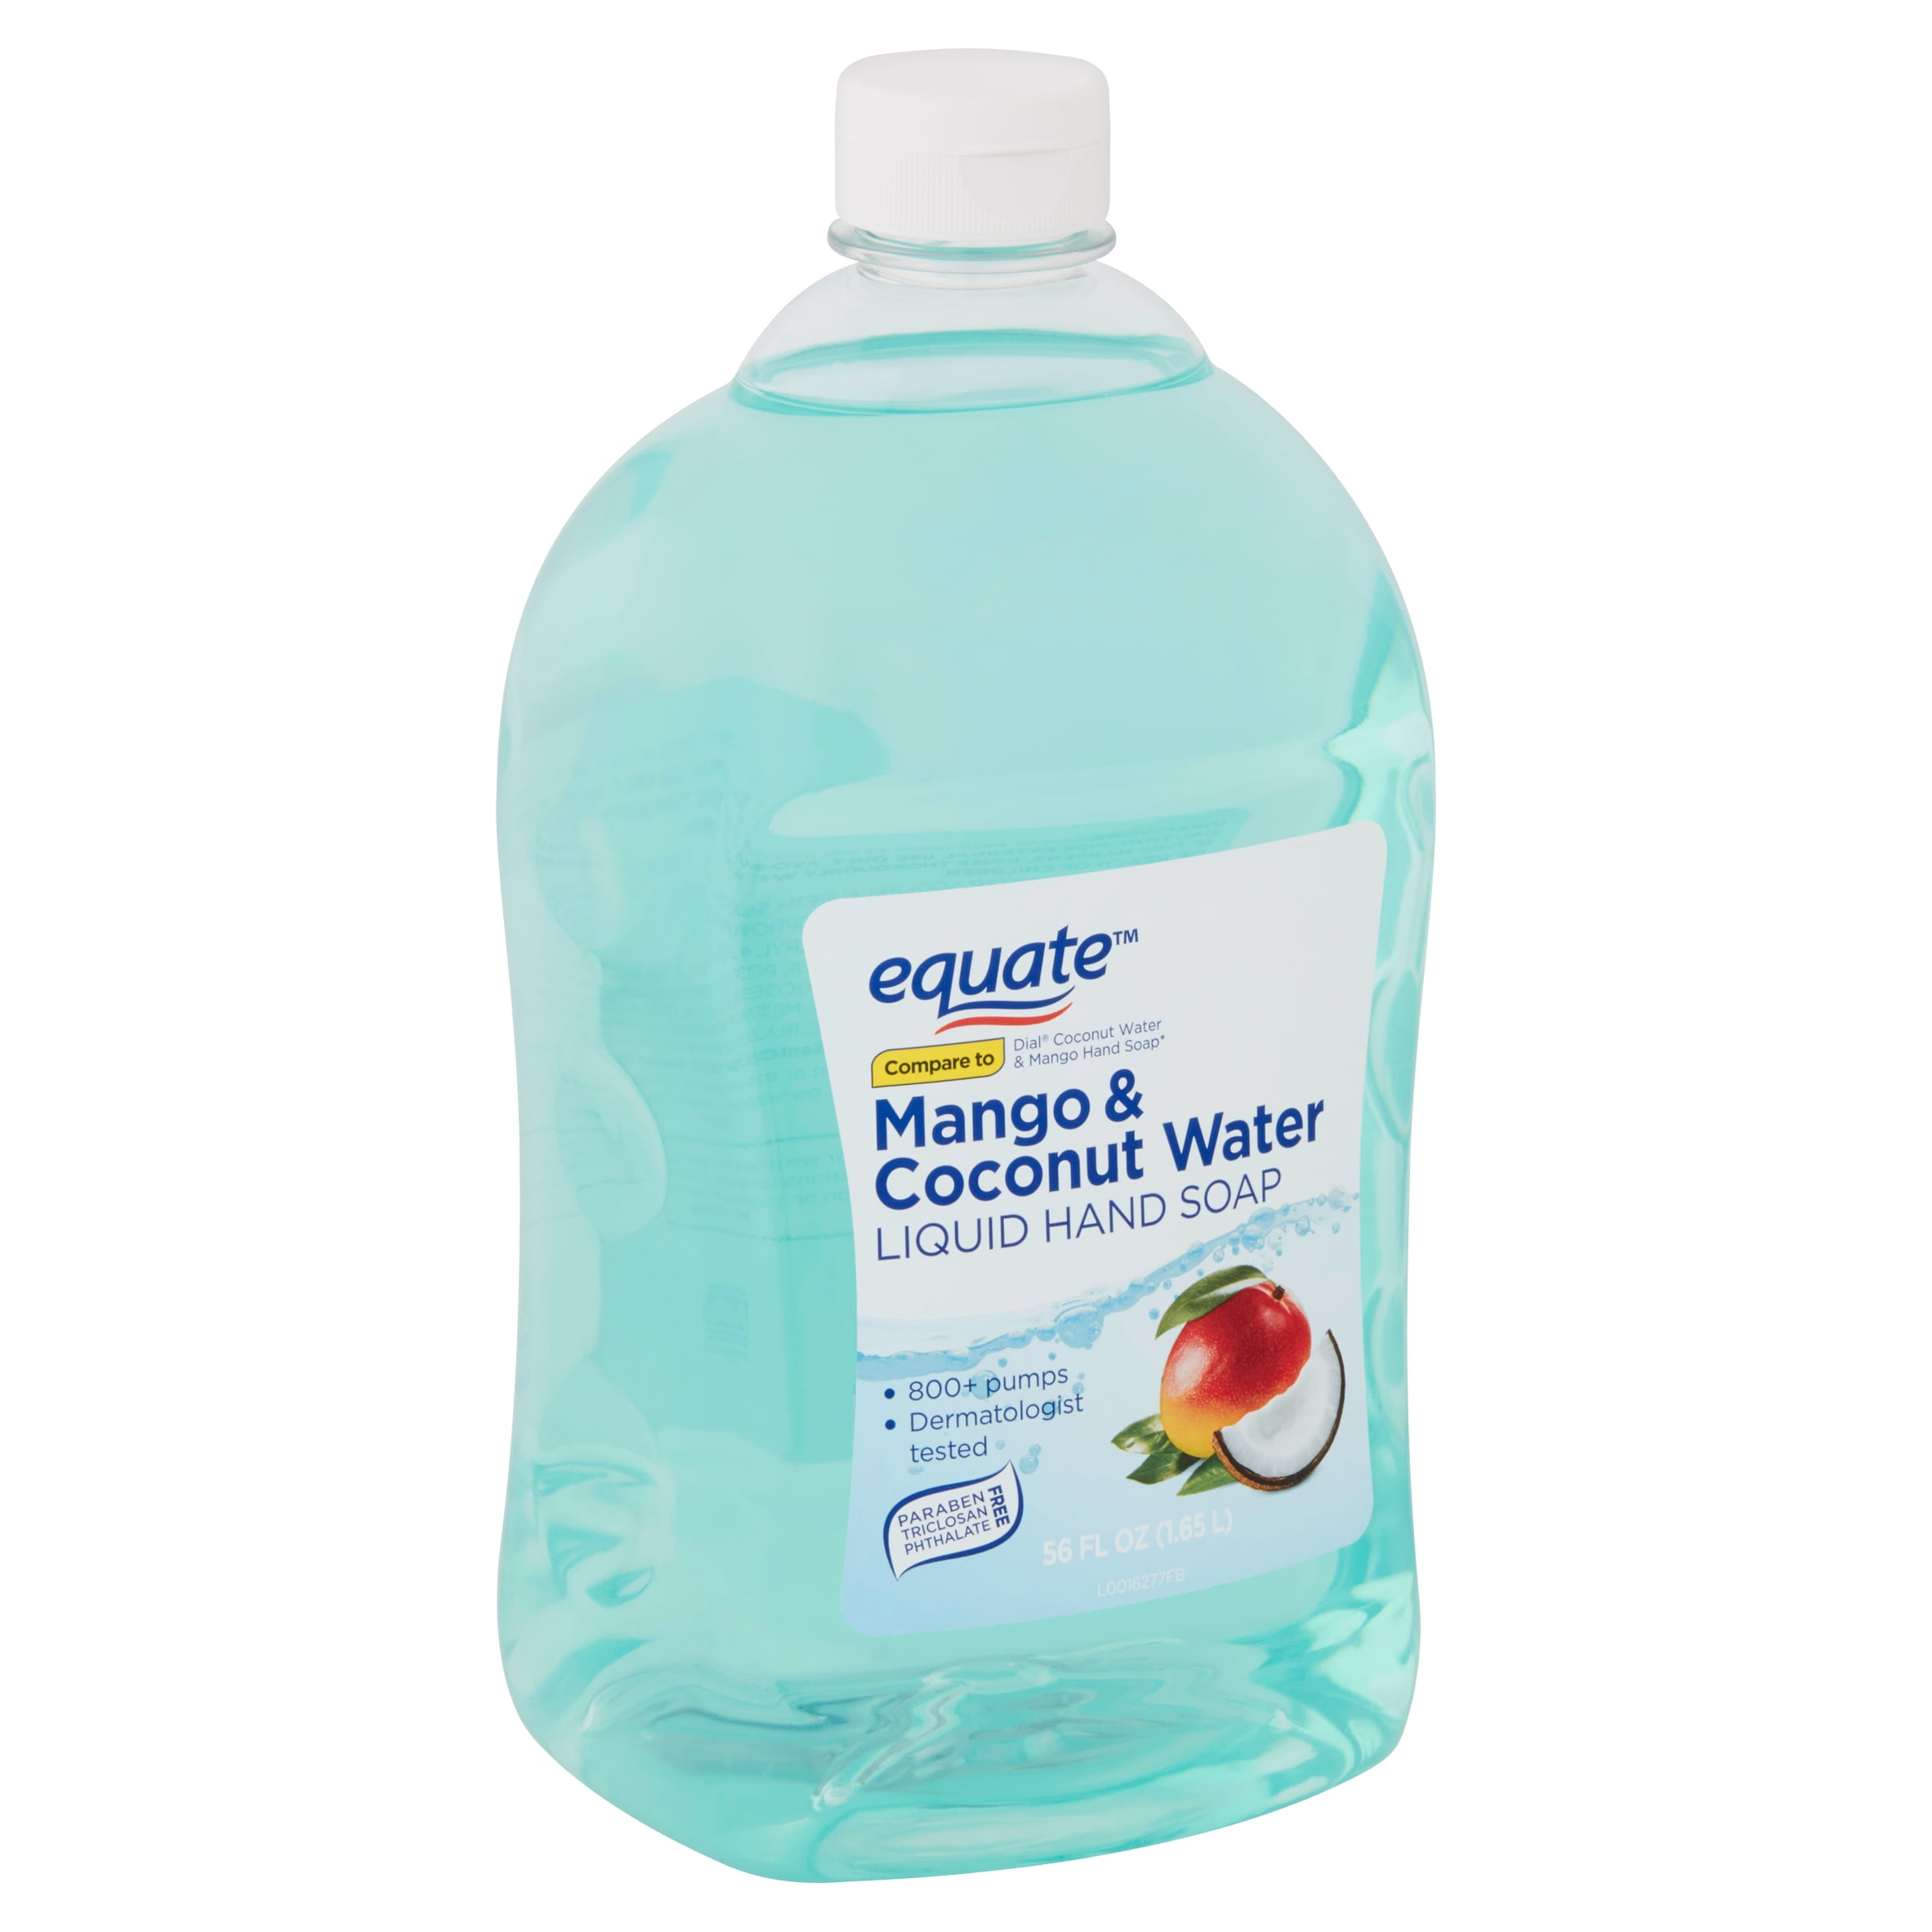 Equate Mango Coconut Water Liquid Hand Soap 56 Fl Oz Walmart Com Walmart Com